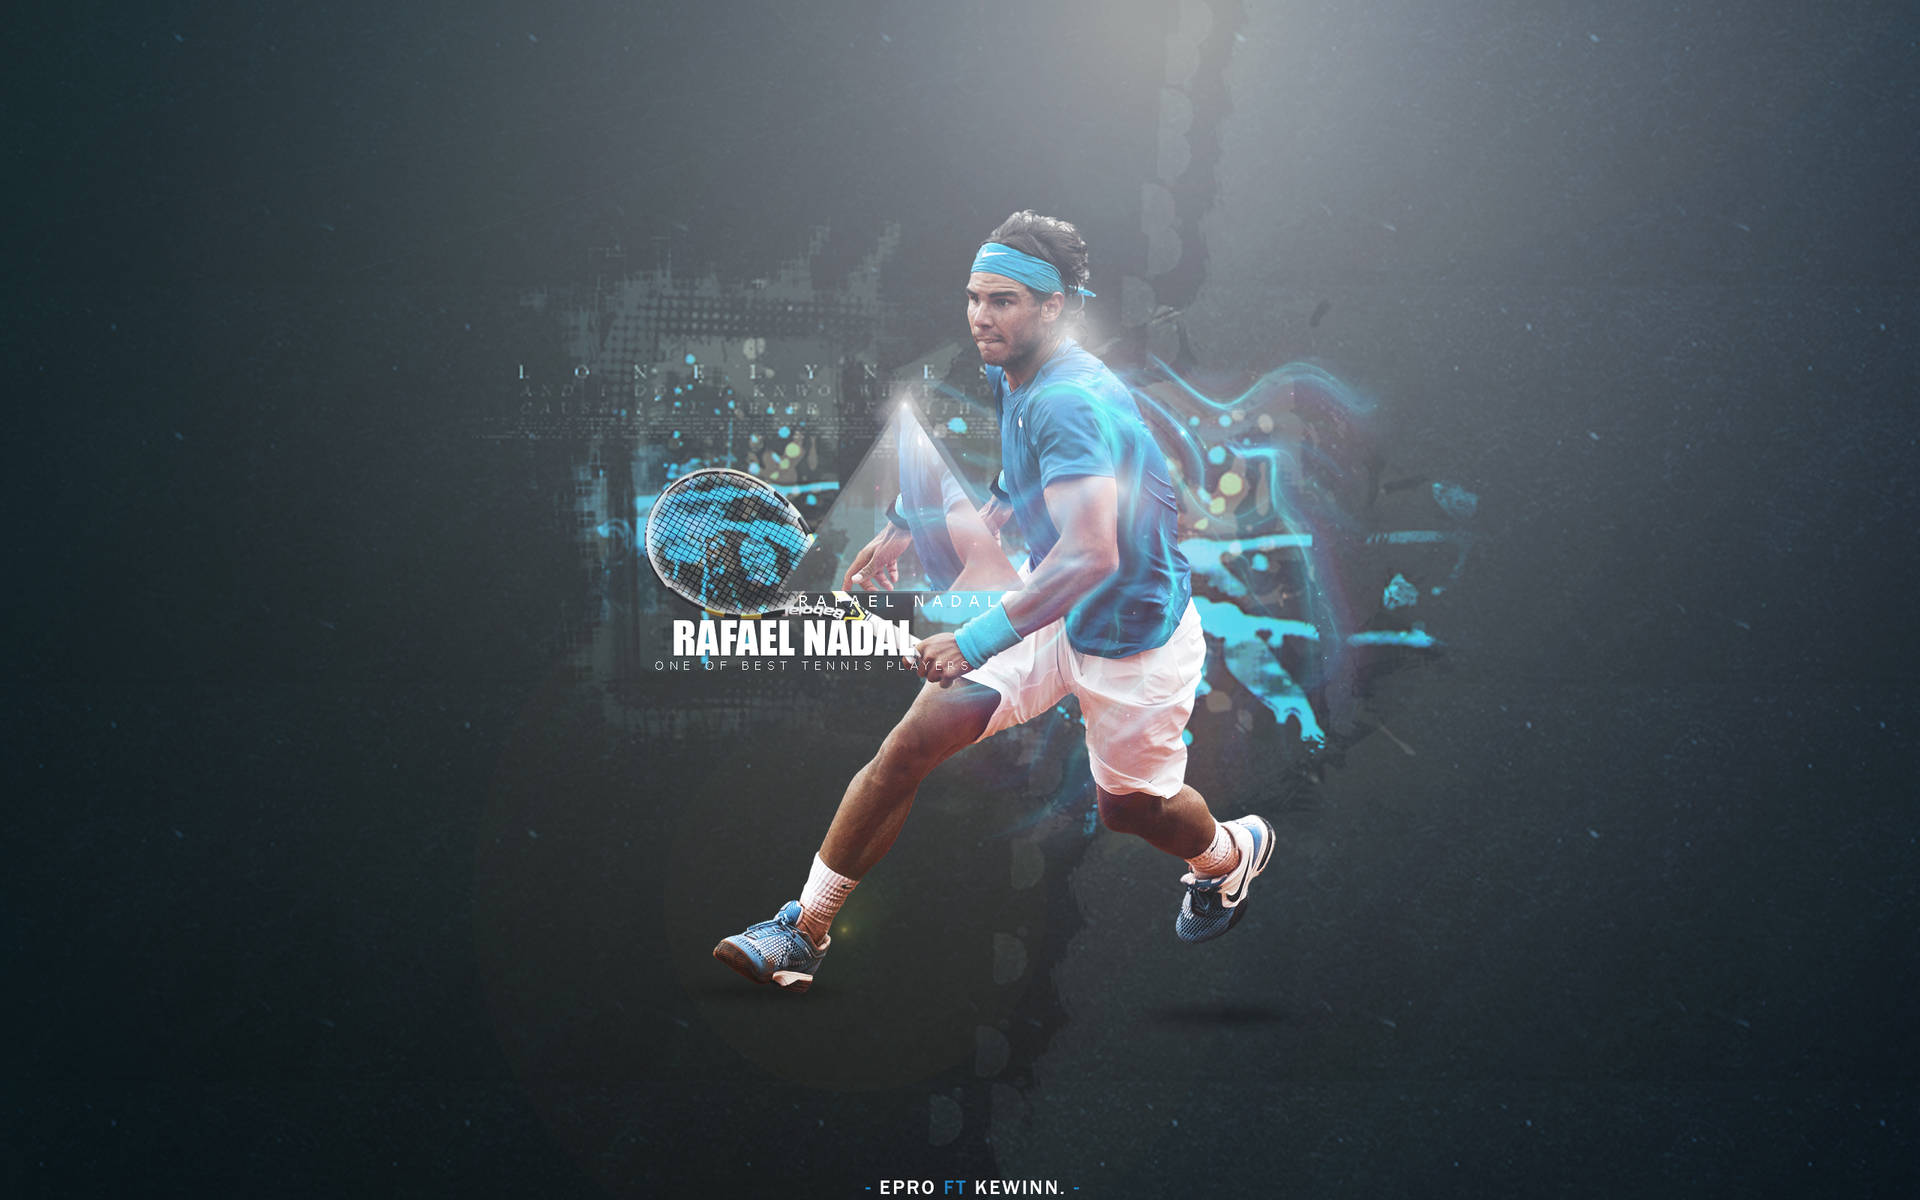 Rafael Nadal Stylish Edit Poster